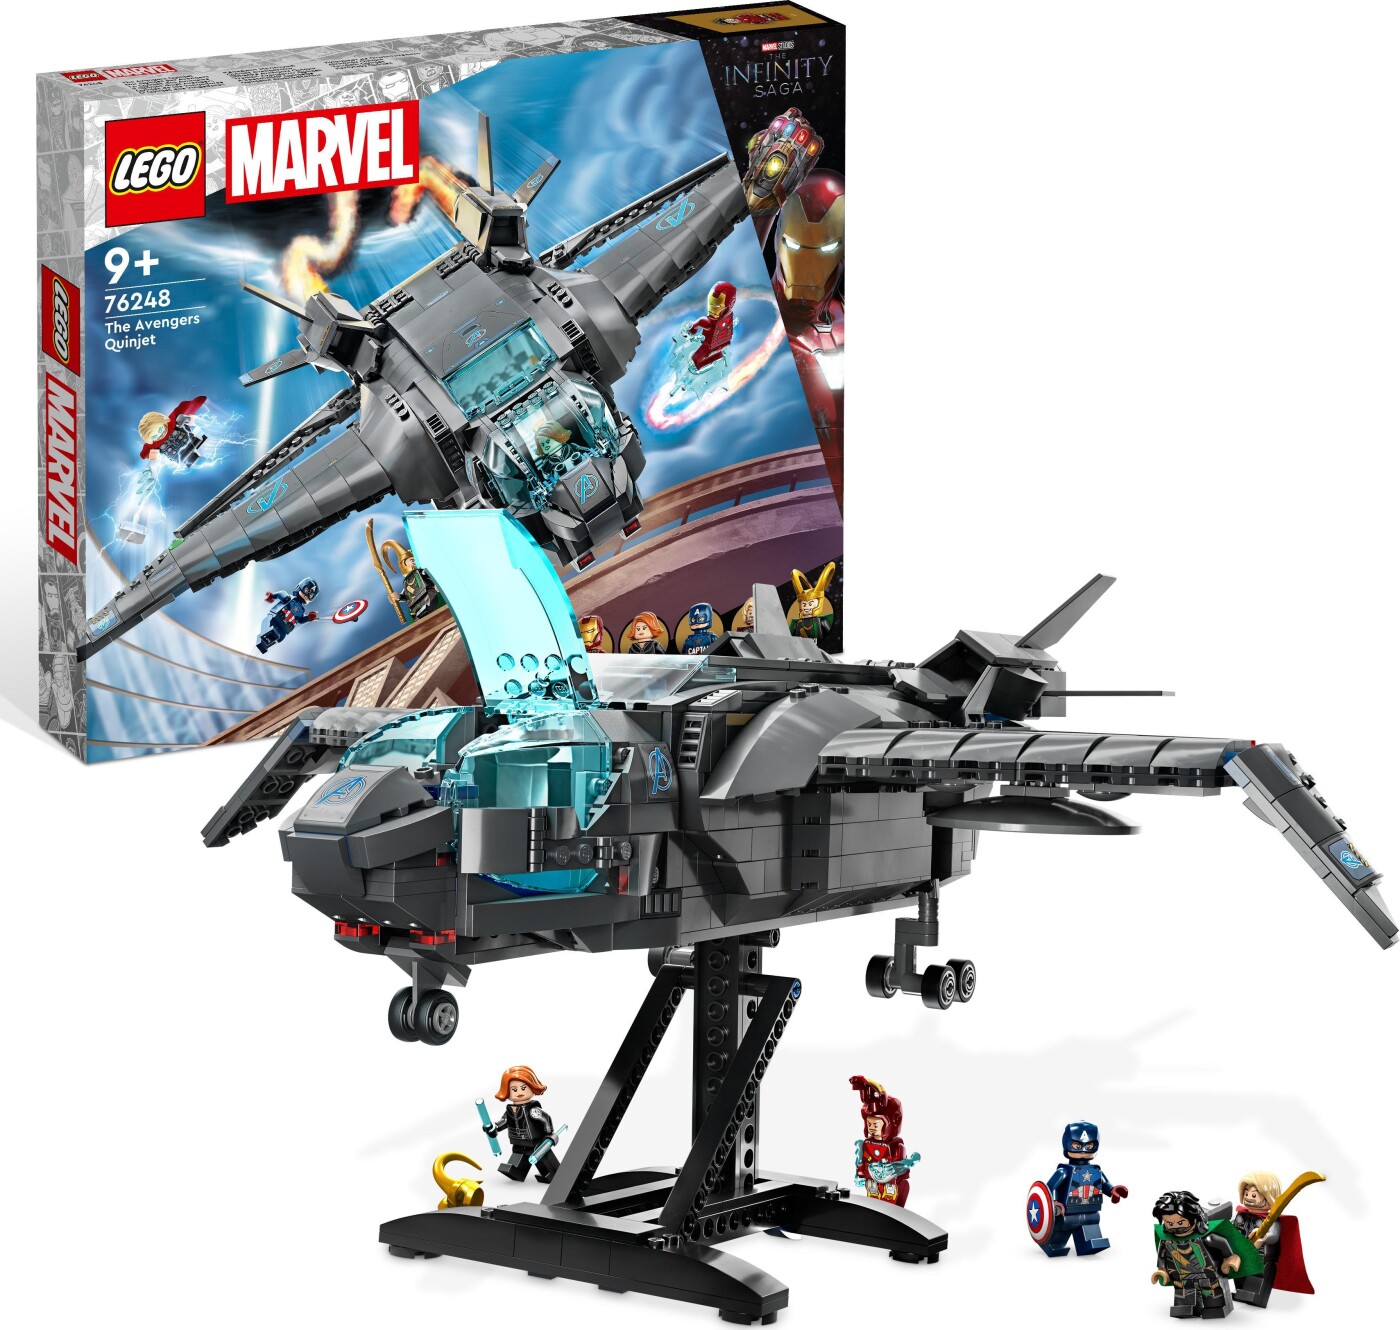 Billede af Lego Marvel - Avengers Quinjet - 76248 hos Gucca.dk